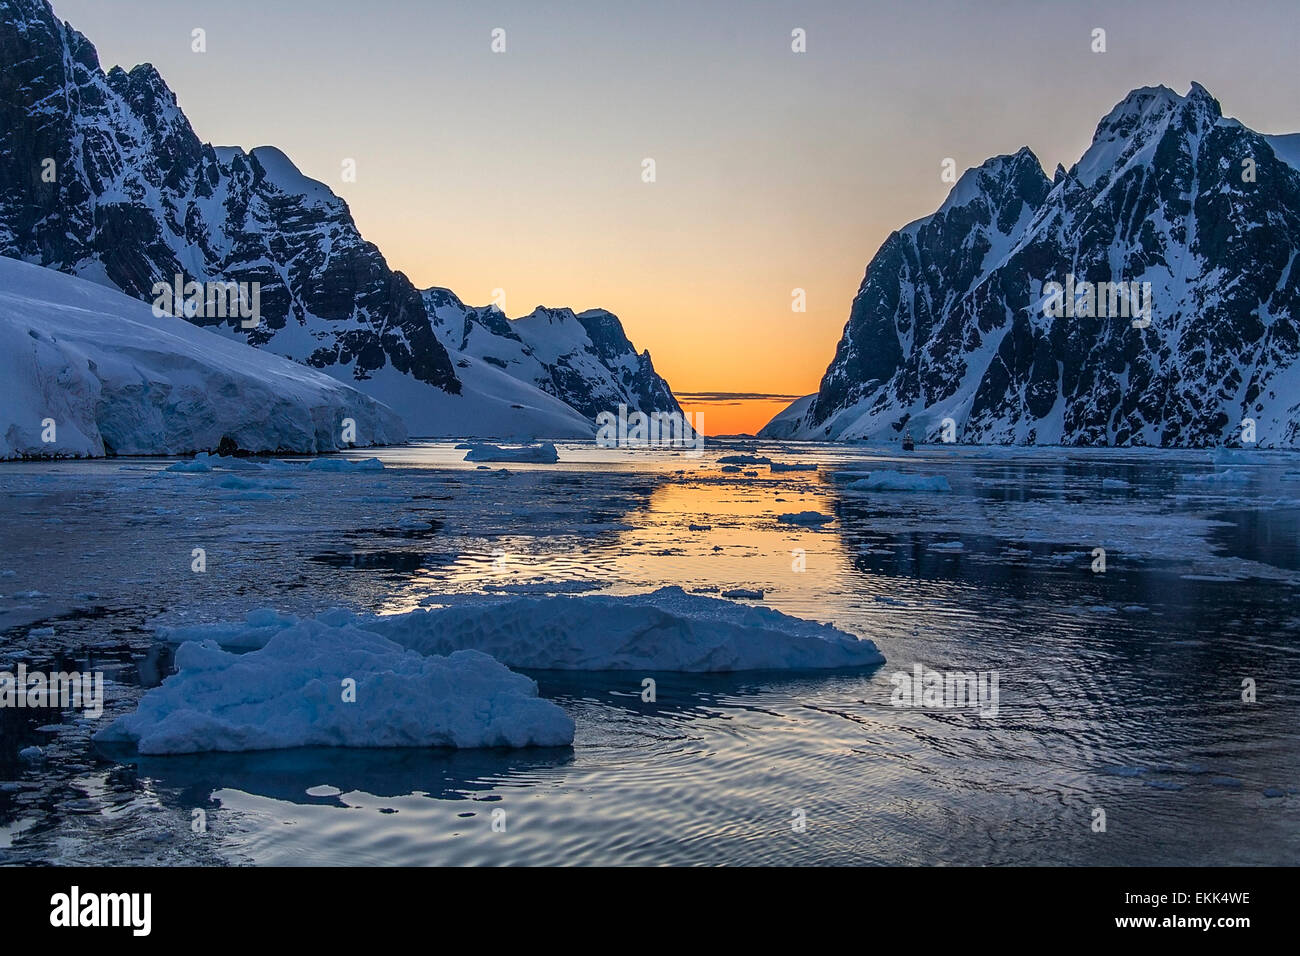 Brise-glace tourisme dans le paysage spectaculaire du Canal Lemaire sur la péninsule Antarctique dans l'Antarctique. Banque D'Images